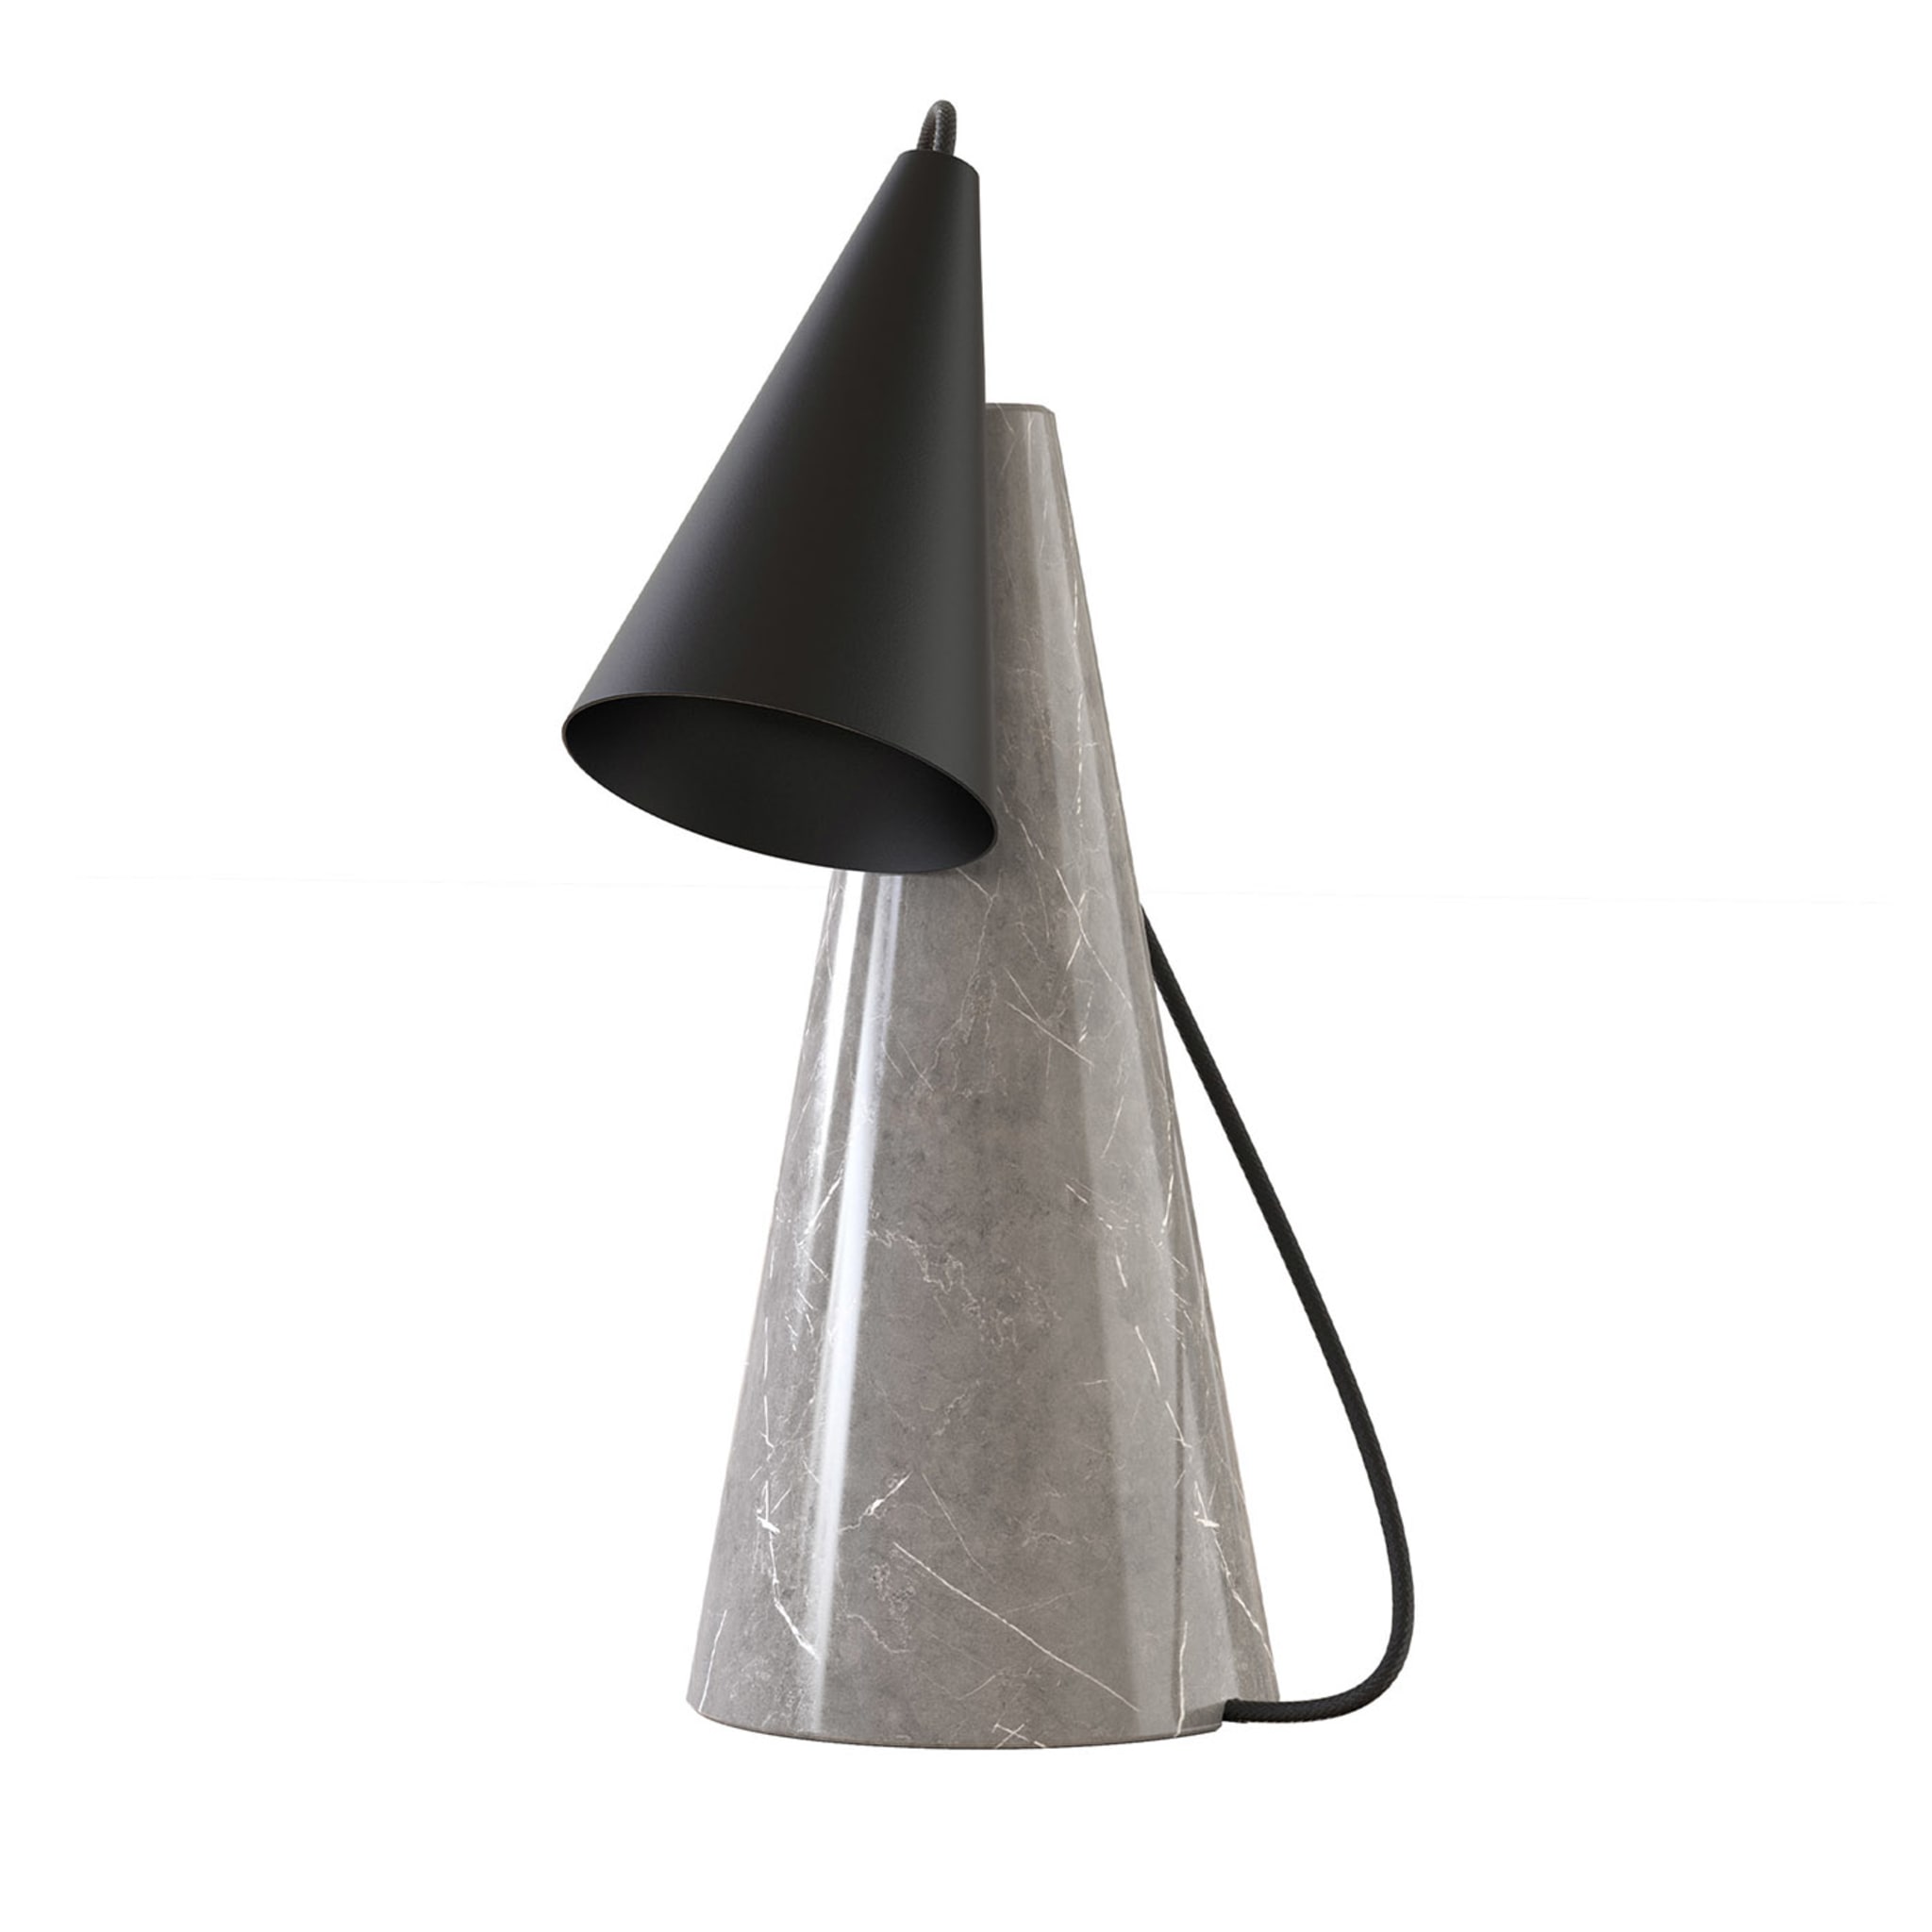 ED038 Lampada da tavolo in pietra grigia e nera - Vista principale